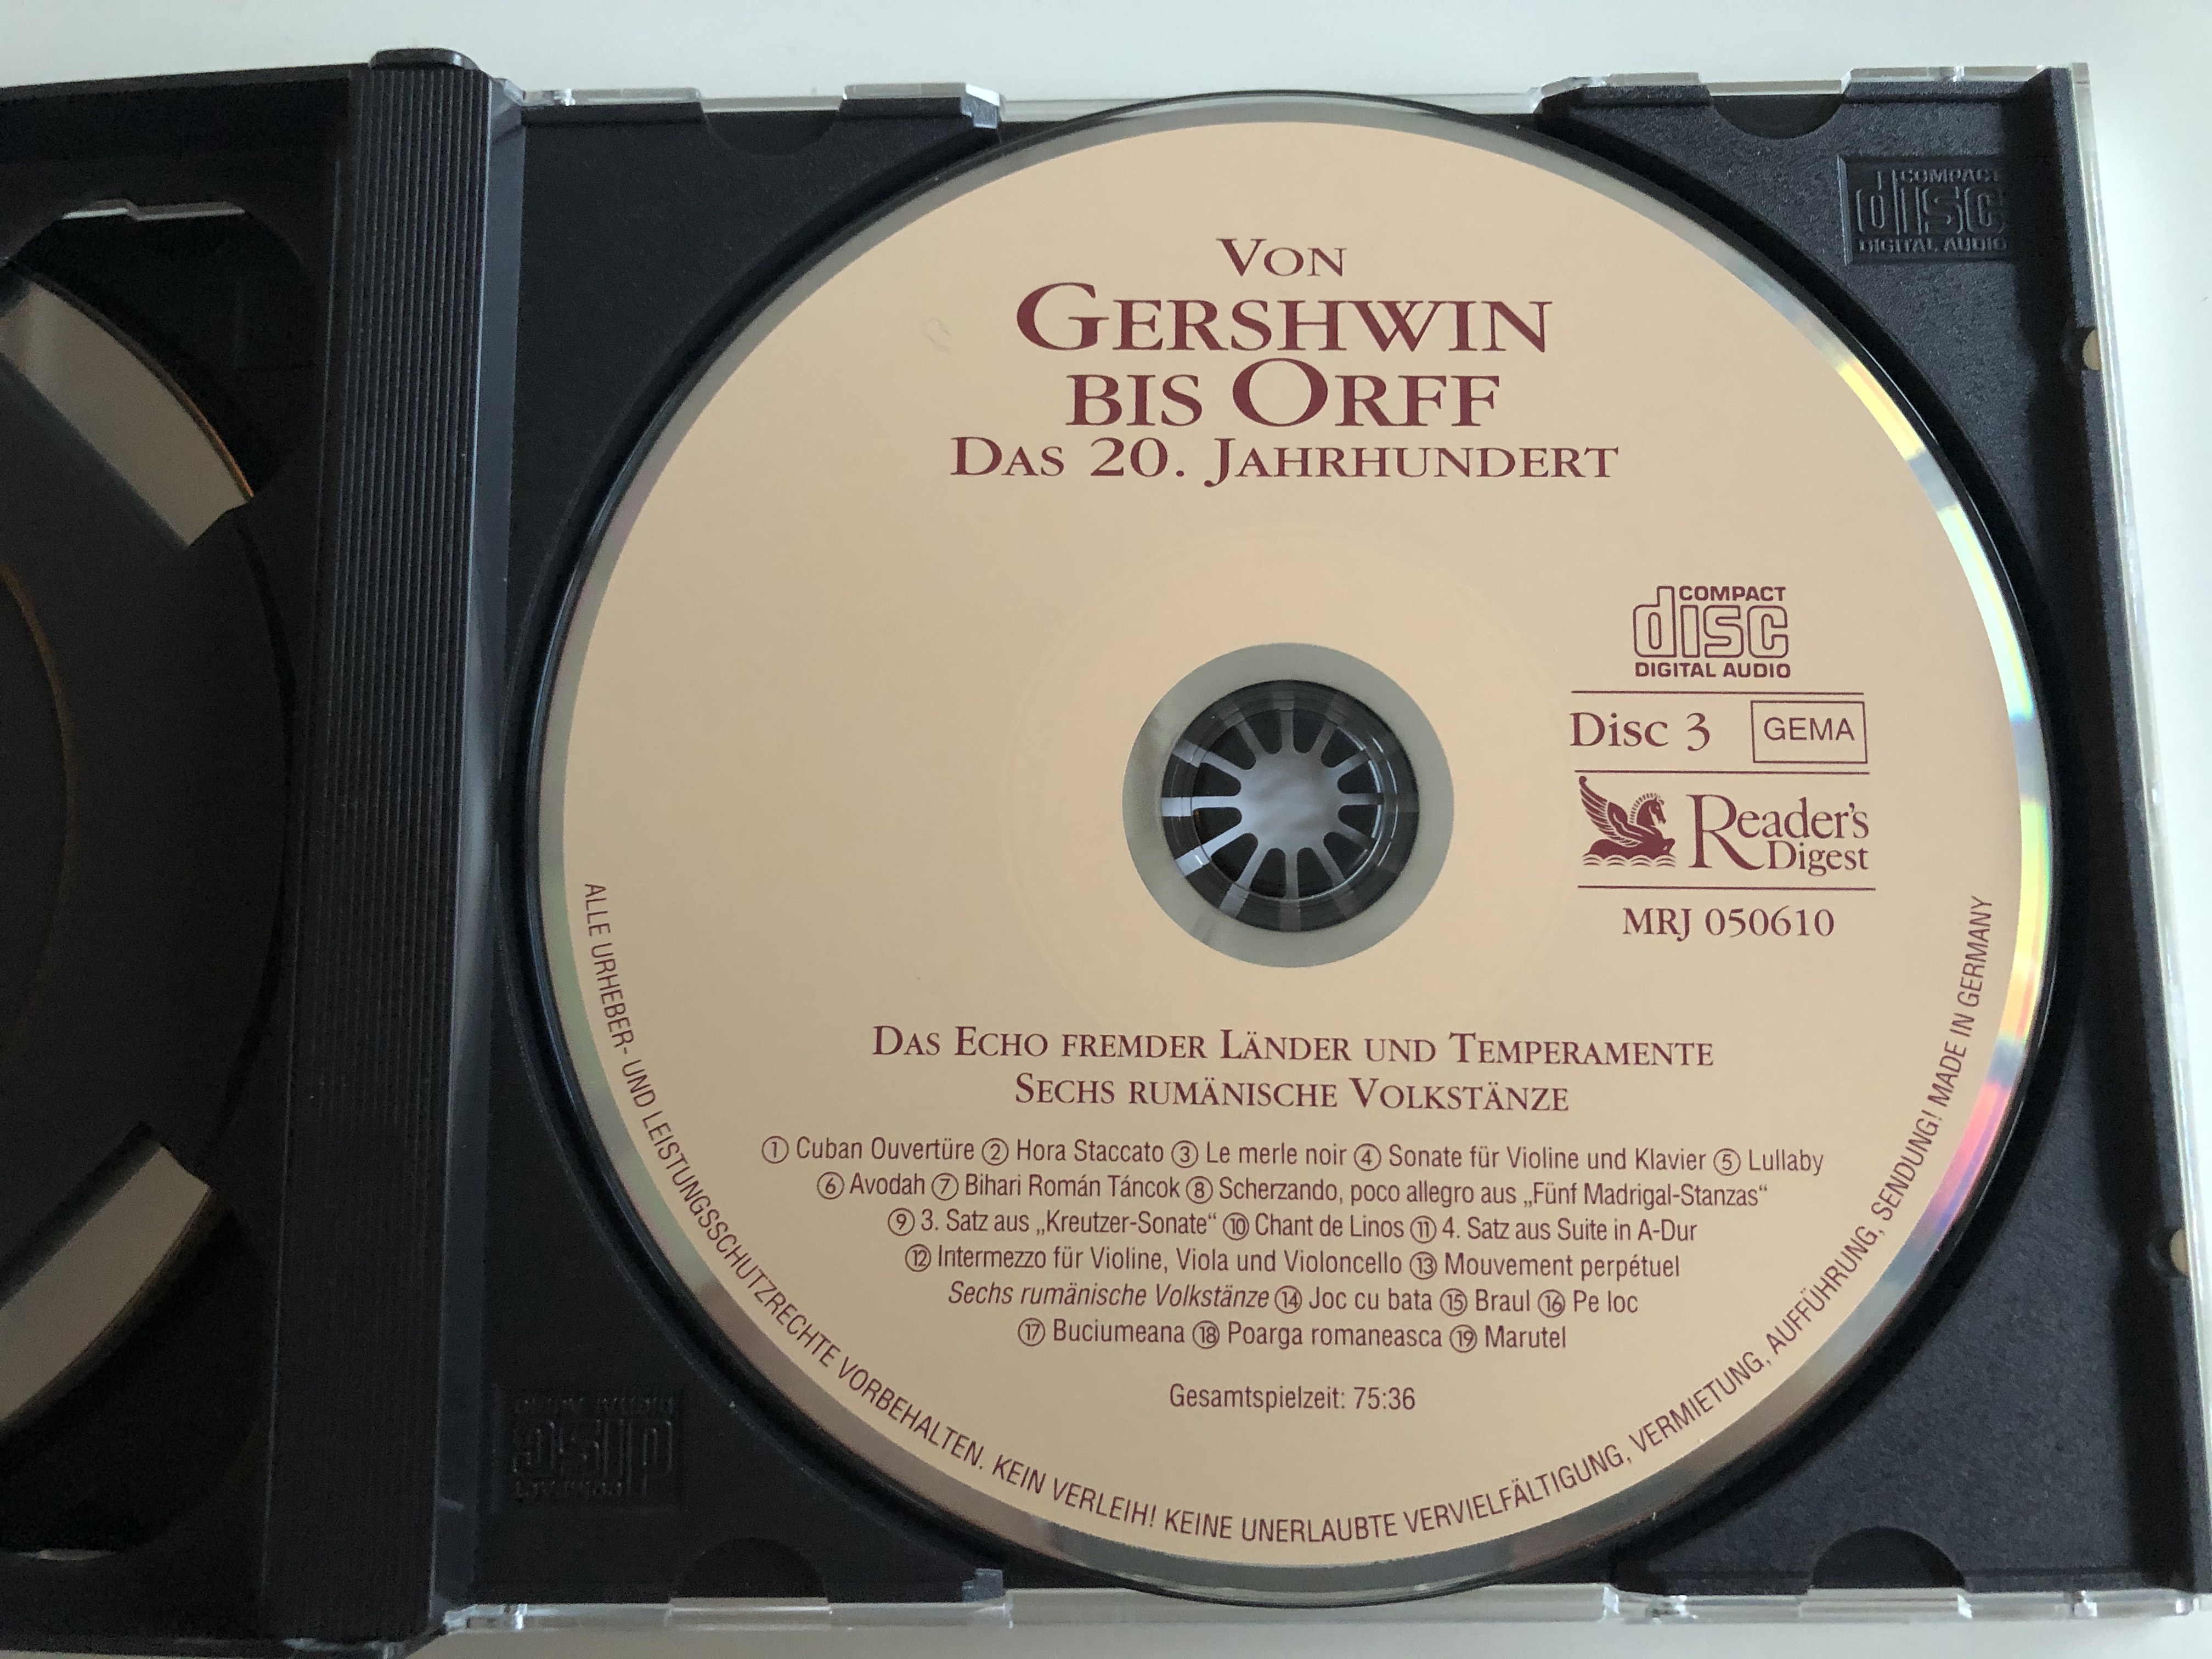 von-gershwin-bis-orff-das-20.-jahrhundert-musikalische-reise-durchs-jahrtausend-reader-s-digest-box-set-3x-audio-cd-2001-mrj-050610-13-.jpg